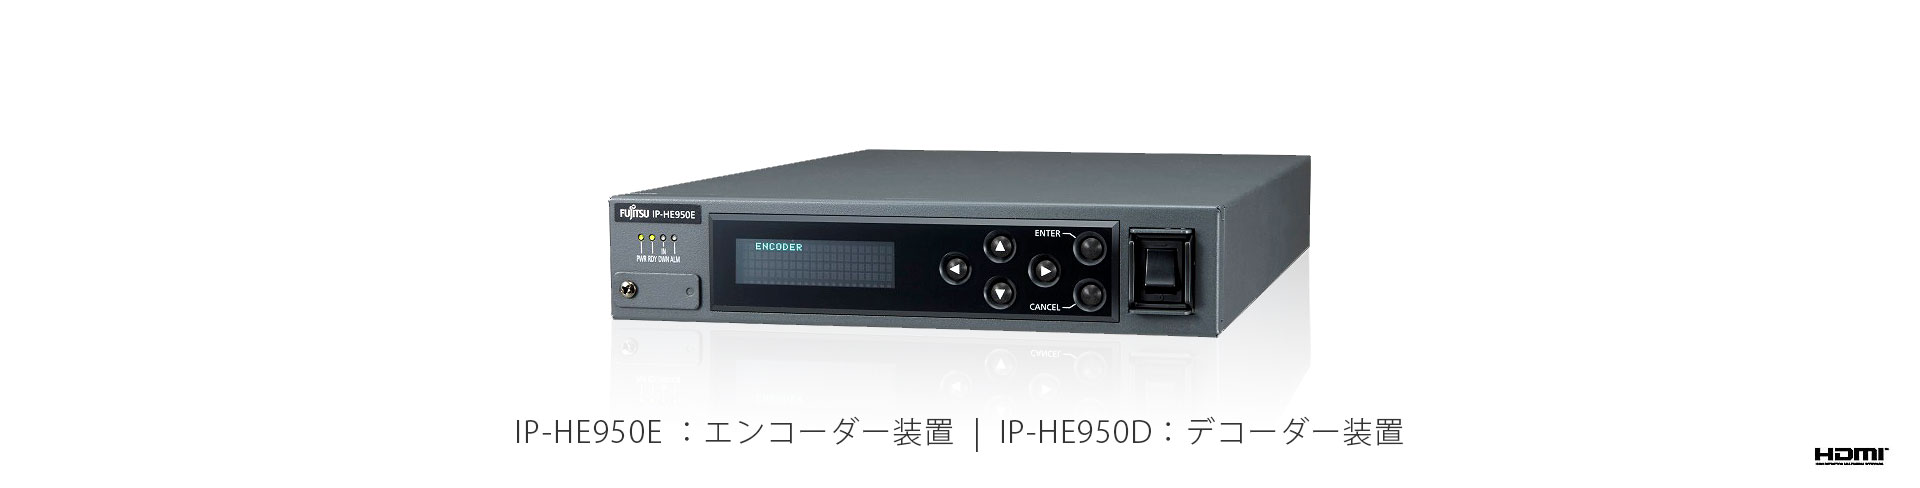 H.265/H.264リアルタイムコーデック「IP-HE950」